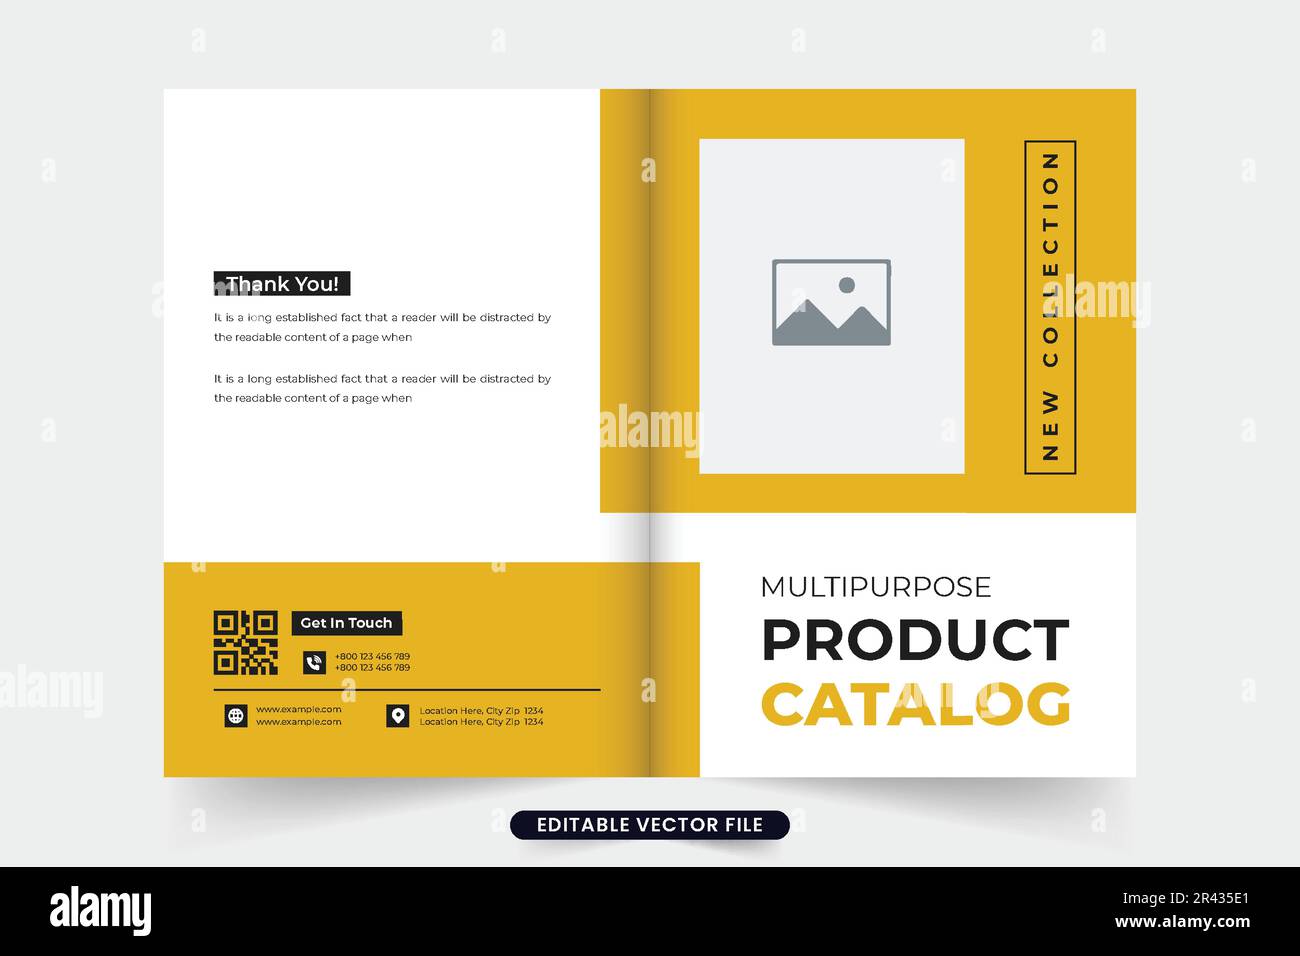 Produktkatalog- und Werbezeitschrift-Cover-Vorlage mit Fotoplatzhaltern. Deckblatt des Firmenprospekts mit gelben und dunklen Farben. Stock Vektor